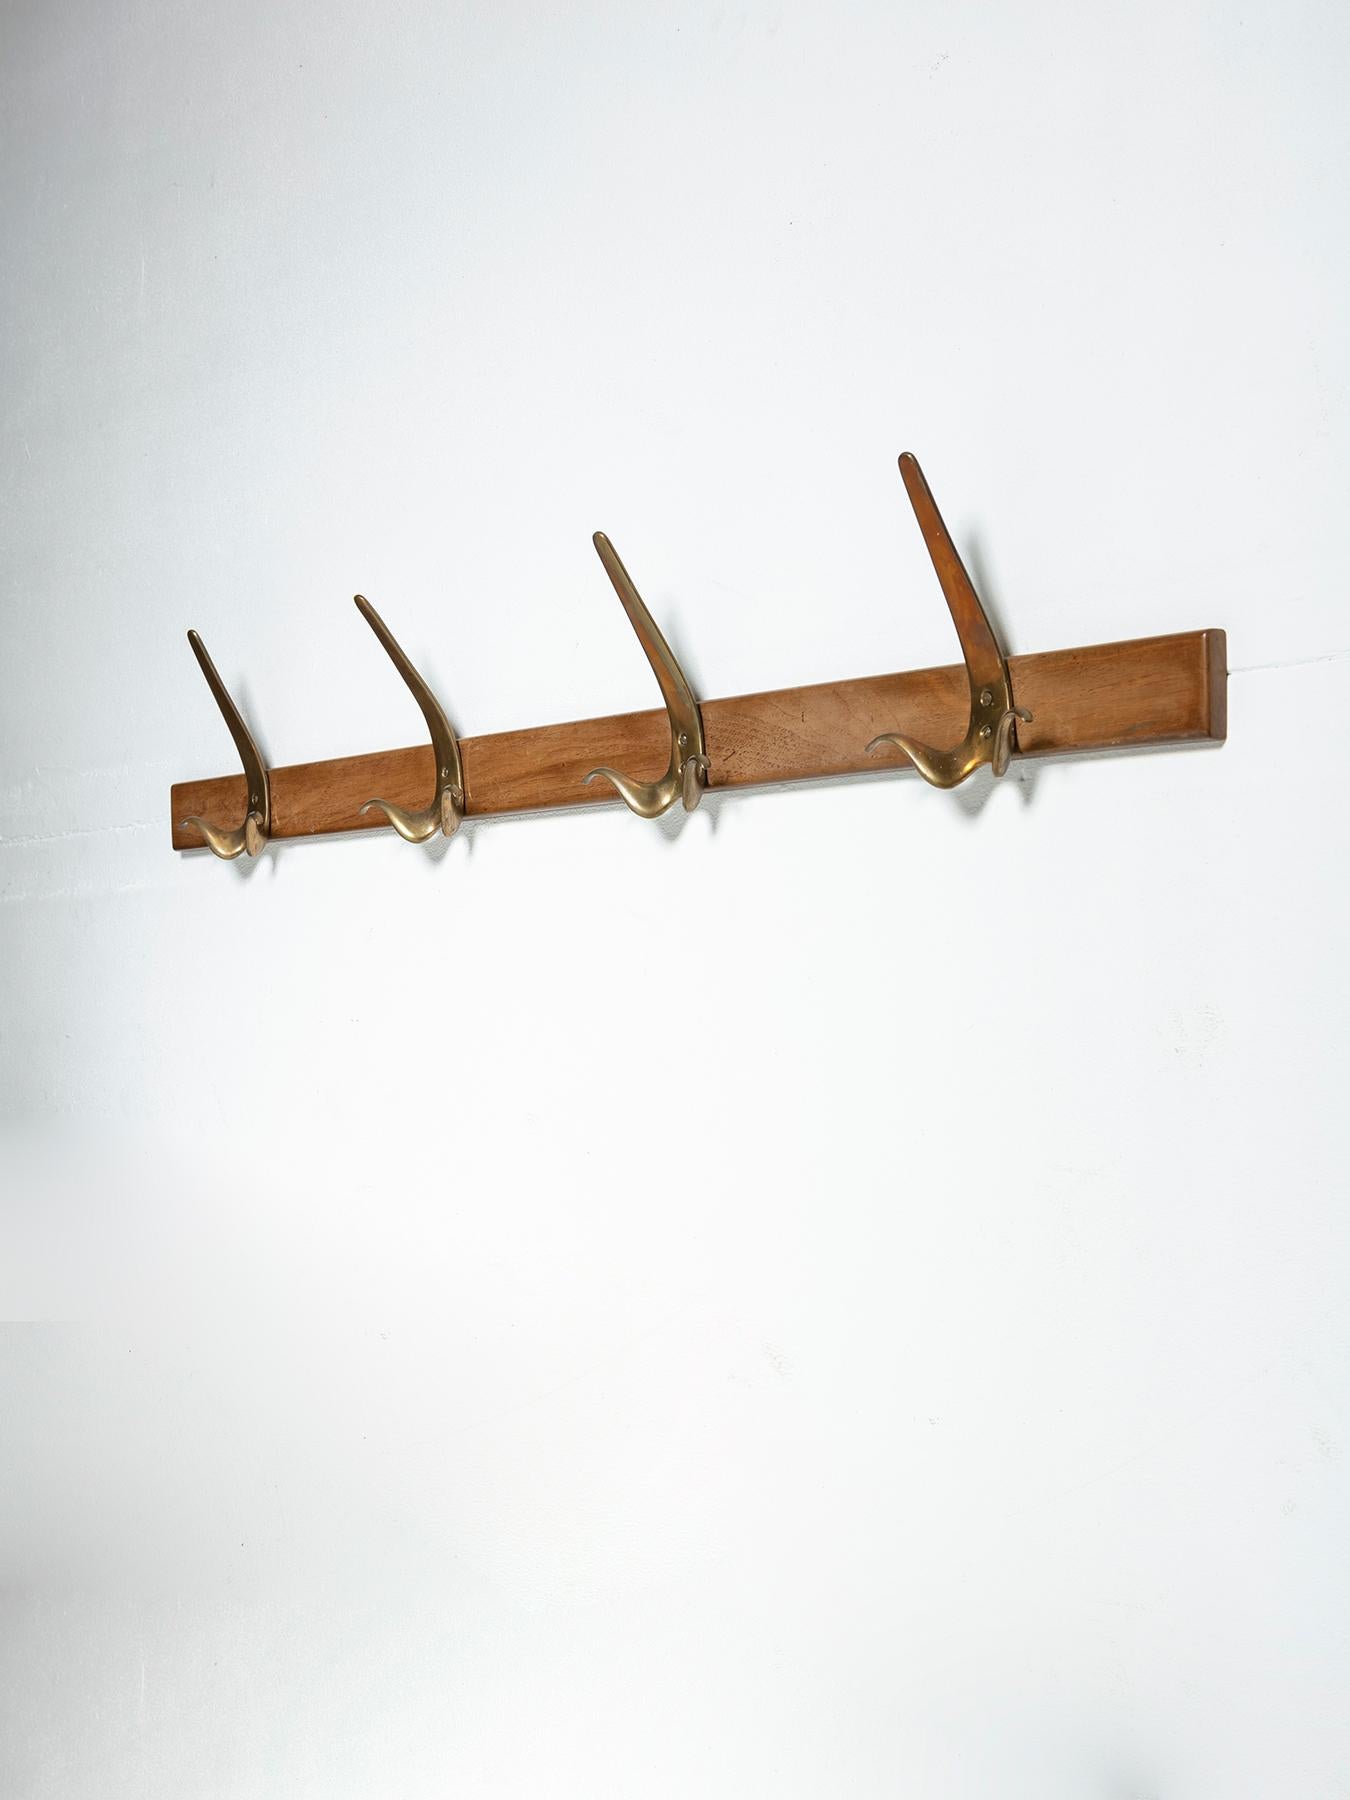 Seltener Garderobenständer, bestehend aus 4 bronzenen Haken in Form eines Schnurrbarts an einer Holzstange.